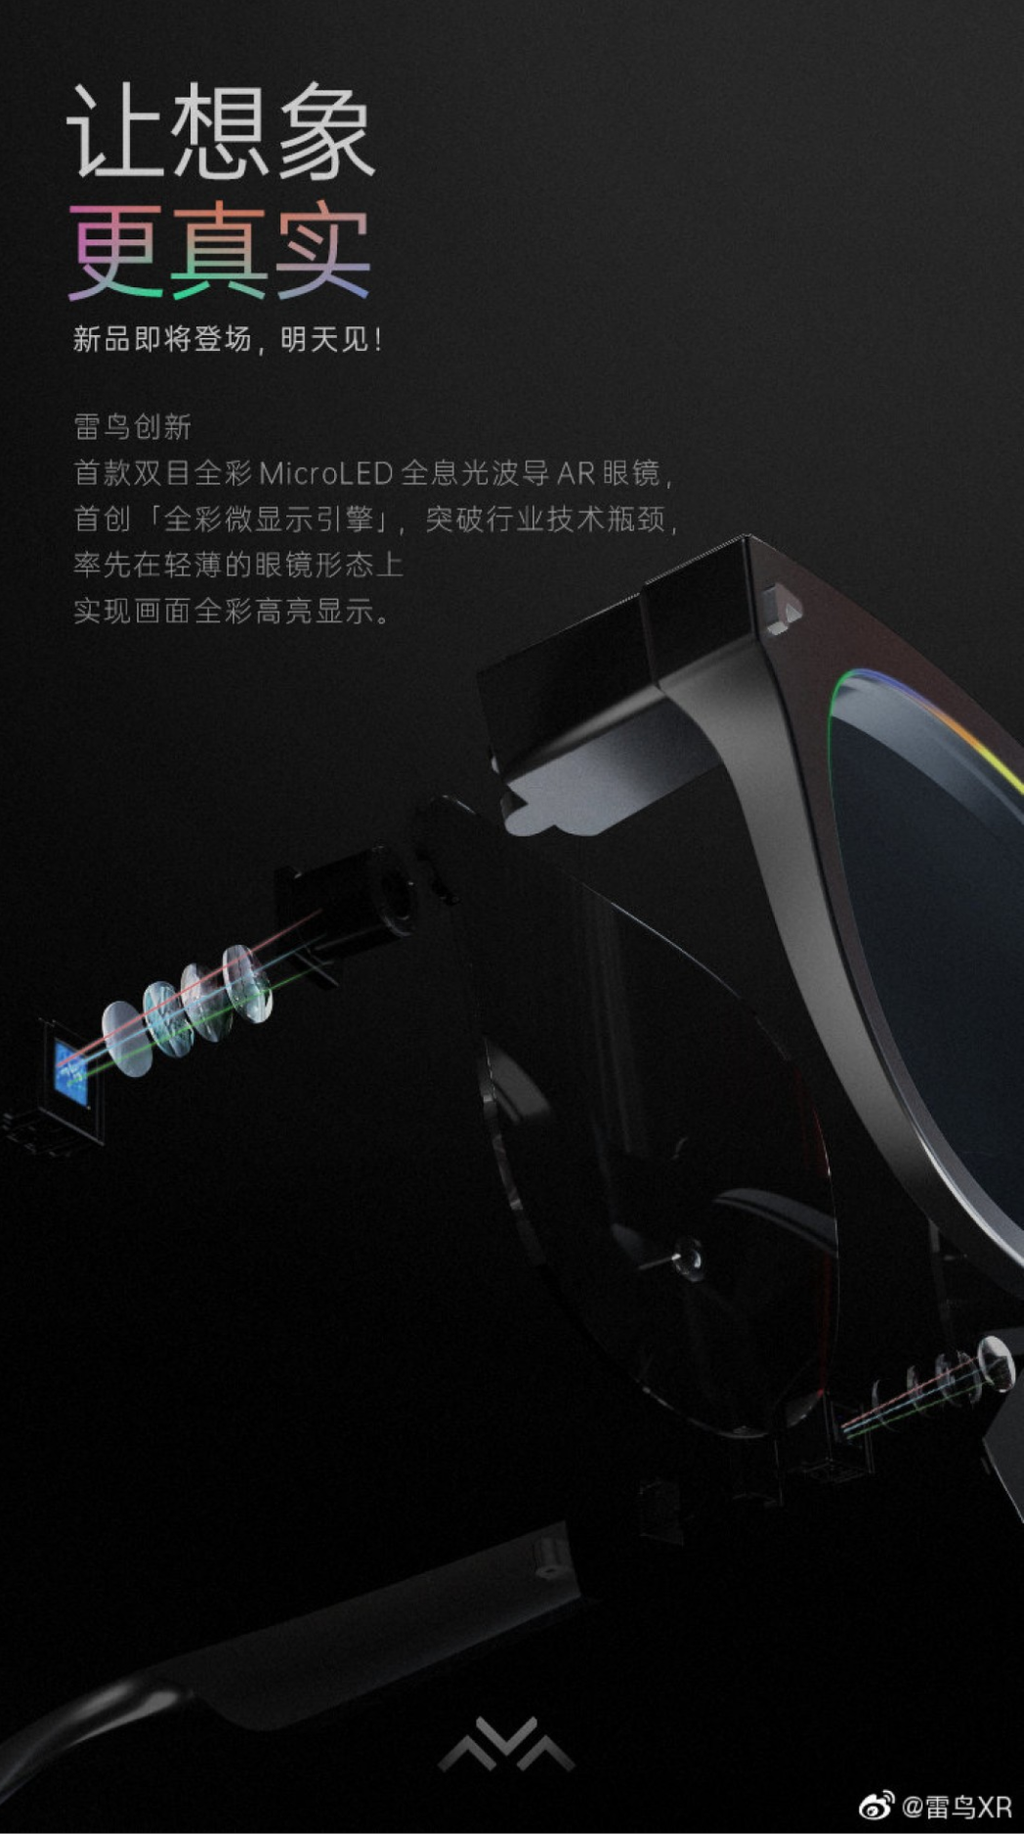 TCL apresenta óculos inteligentes com visual discreto e Micro LEDs nas lentes - 2